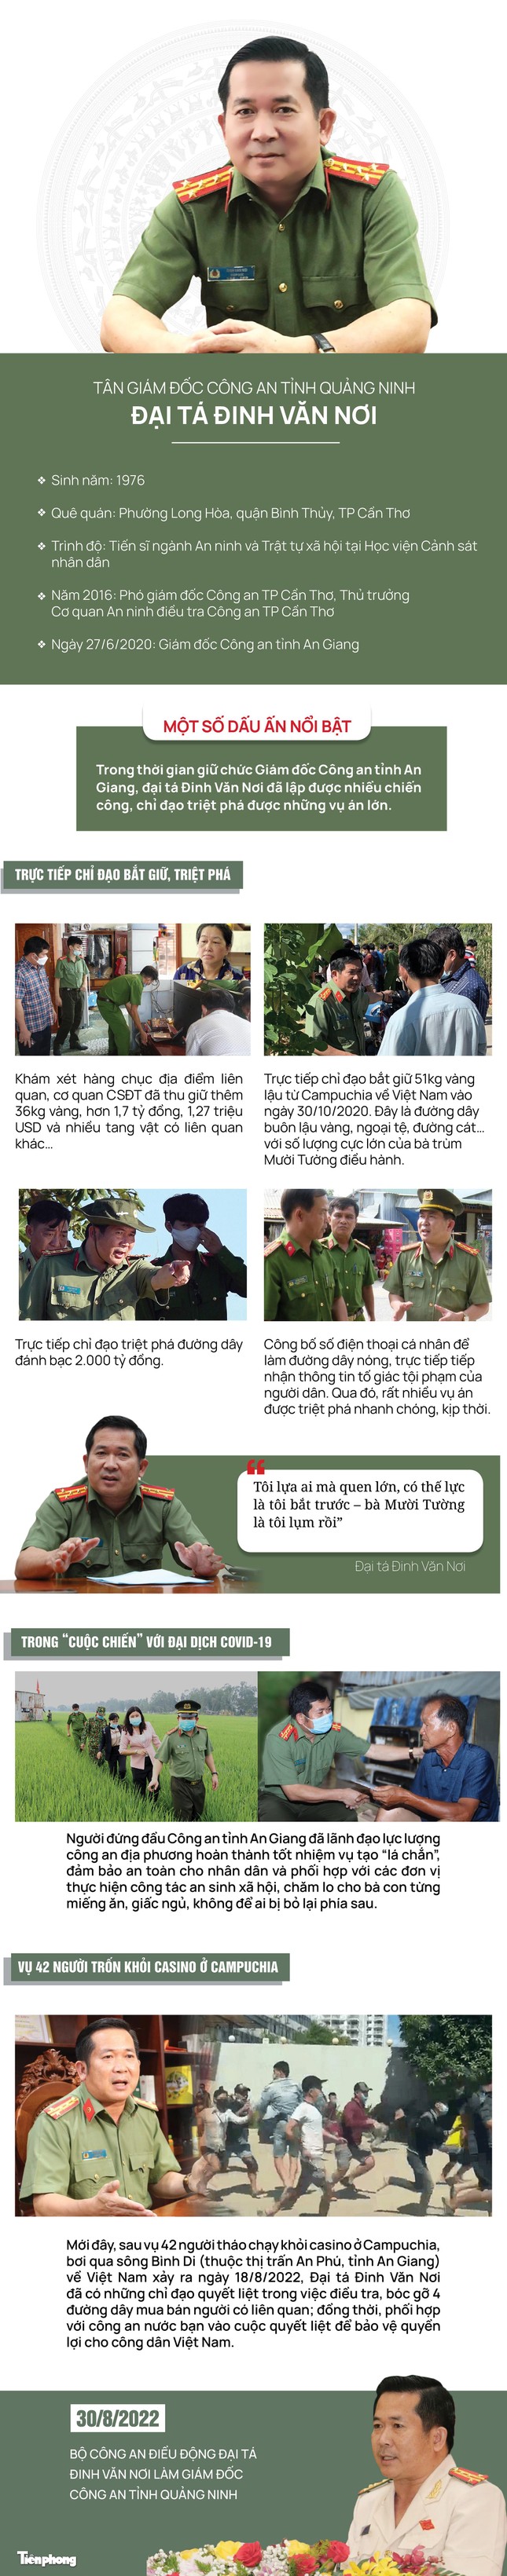 Đại tá Đinh Văn Nơi tham gia Ban Thường vụ Tỉnh ủy Quảng Ninh - Ảnh 2.